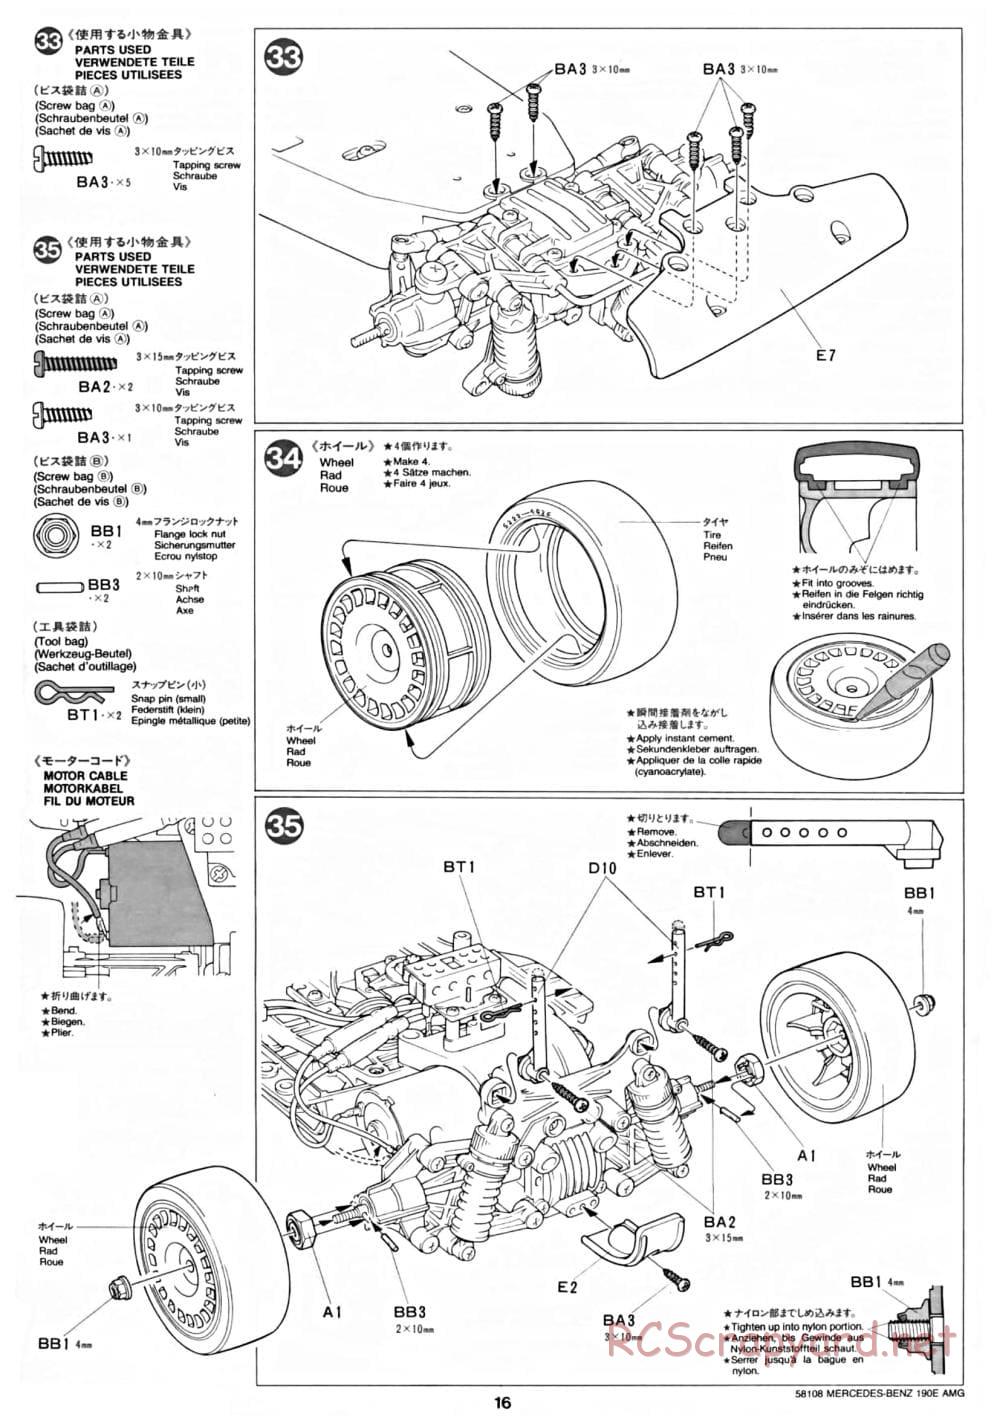 Tamiya - Mercedes Benz 190E Evo.II AMG - TA-01 Chassis - Manual - Page 16